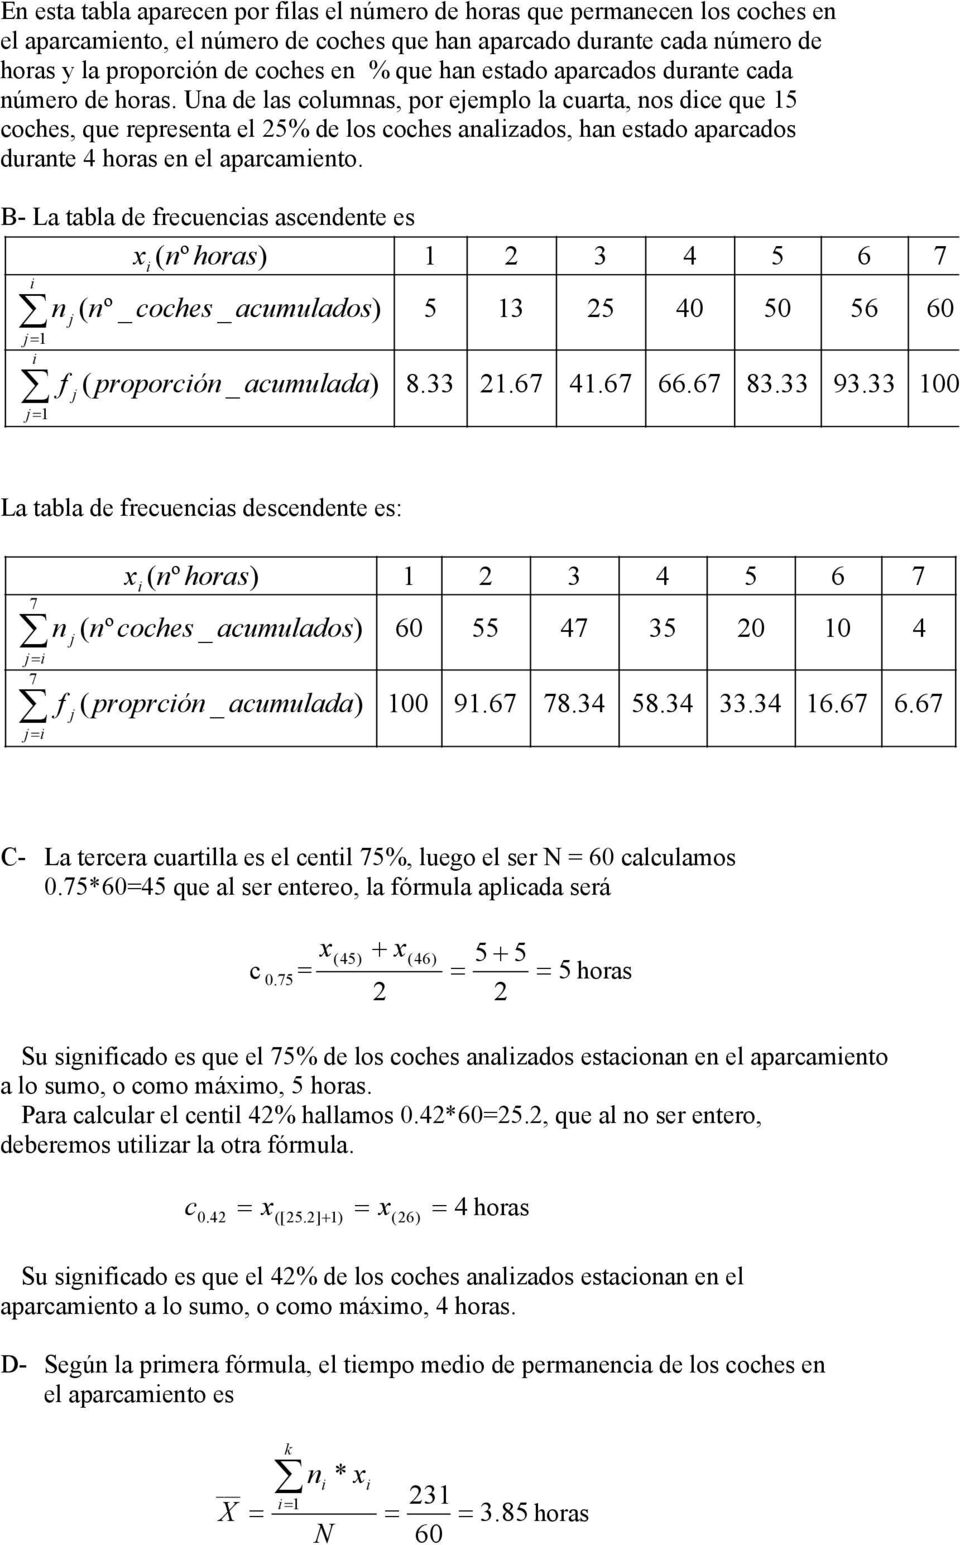 B- La tabla de frecuecas ascedete es x ( º horas) j j j j ( º _ coches _ acumulados) f ( proporcó _ acumulada) 5 8.33 3.67 3 5.67 0 66.67 5 50 83.33 6 56 93.